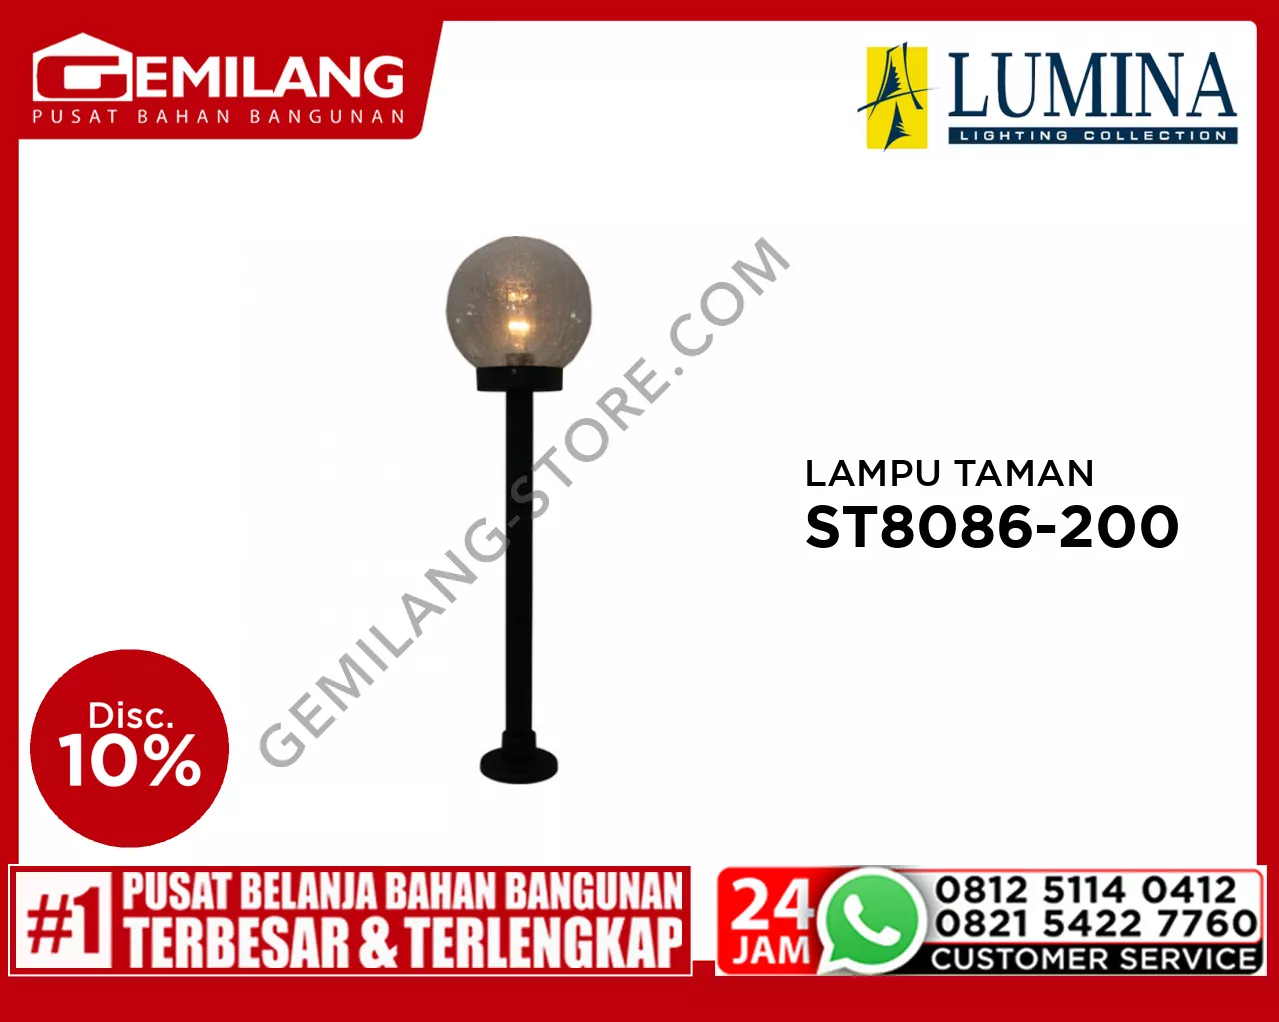 LAMPU TAMAN ST 8086-200 BK